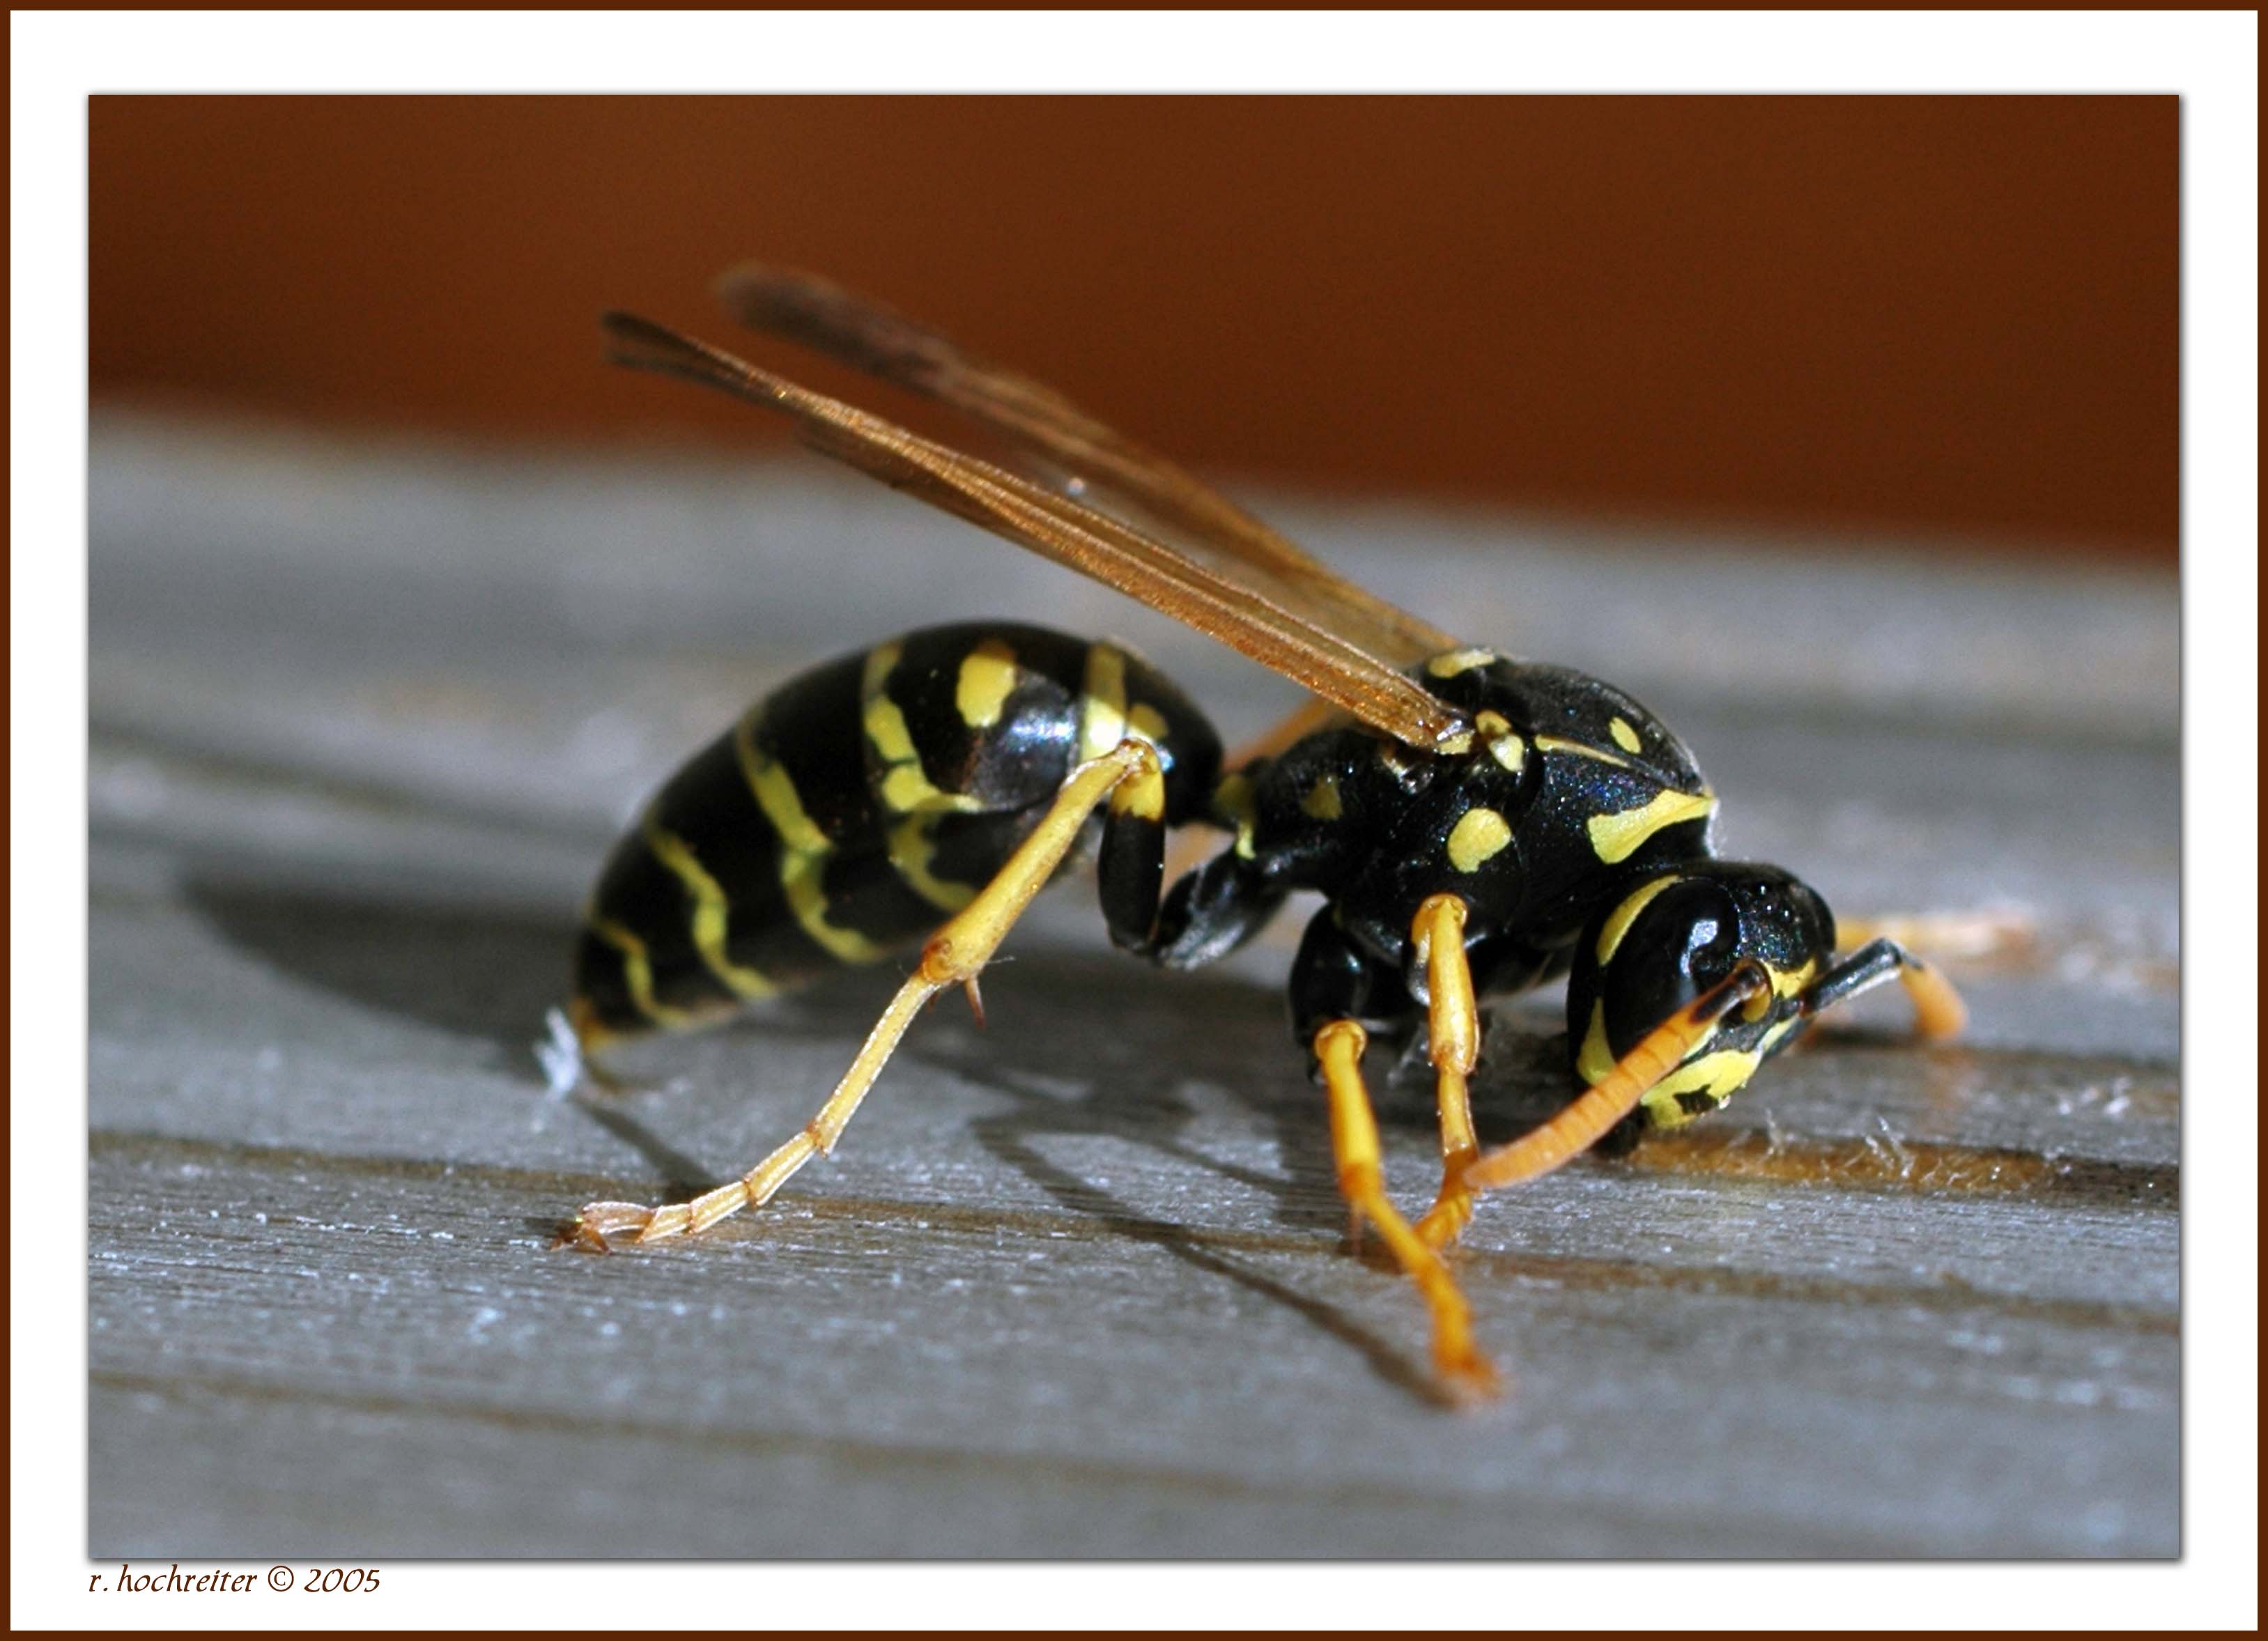 Queen Paper Wasp